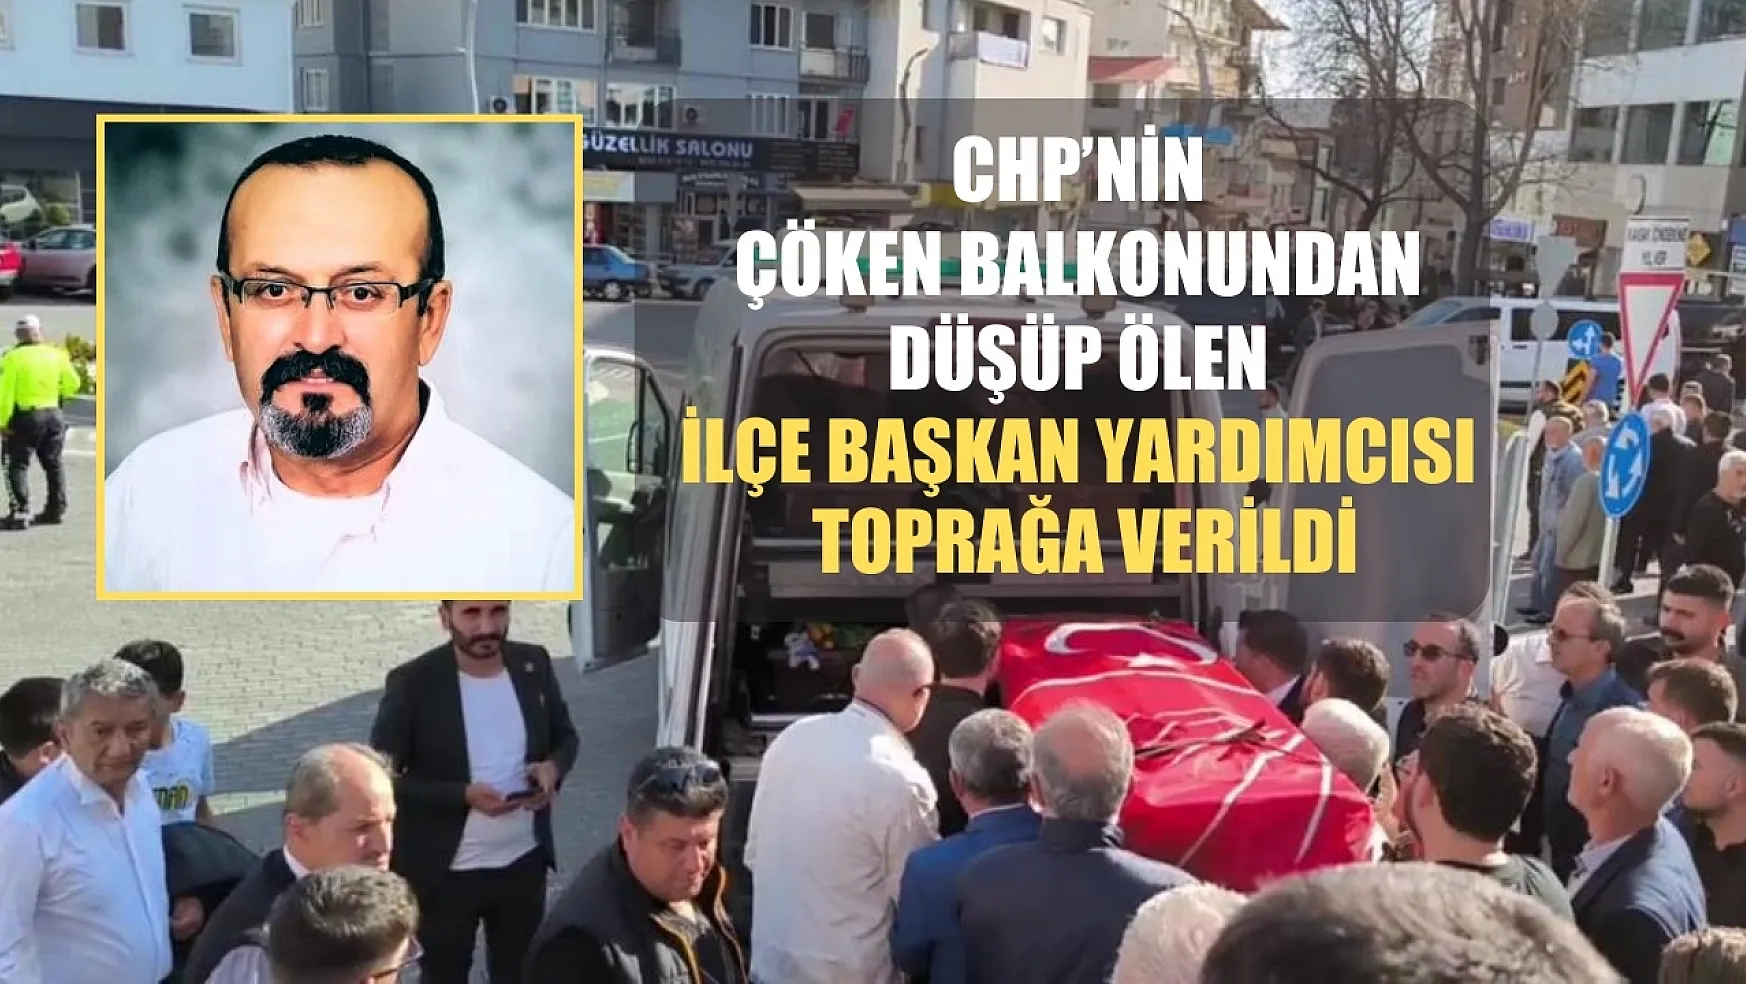 CHP'nin çöken balkonundan düşüp ölen ilçe başkan yardımcısı toprağa verildi